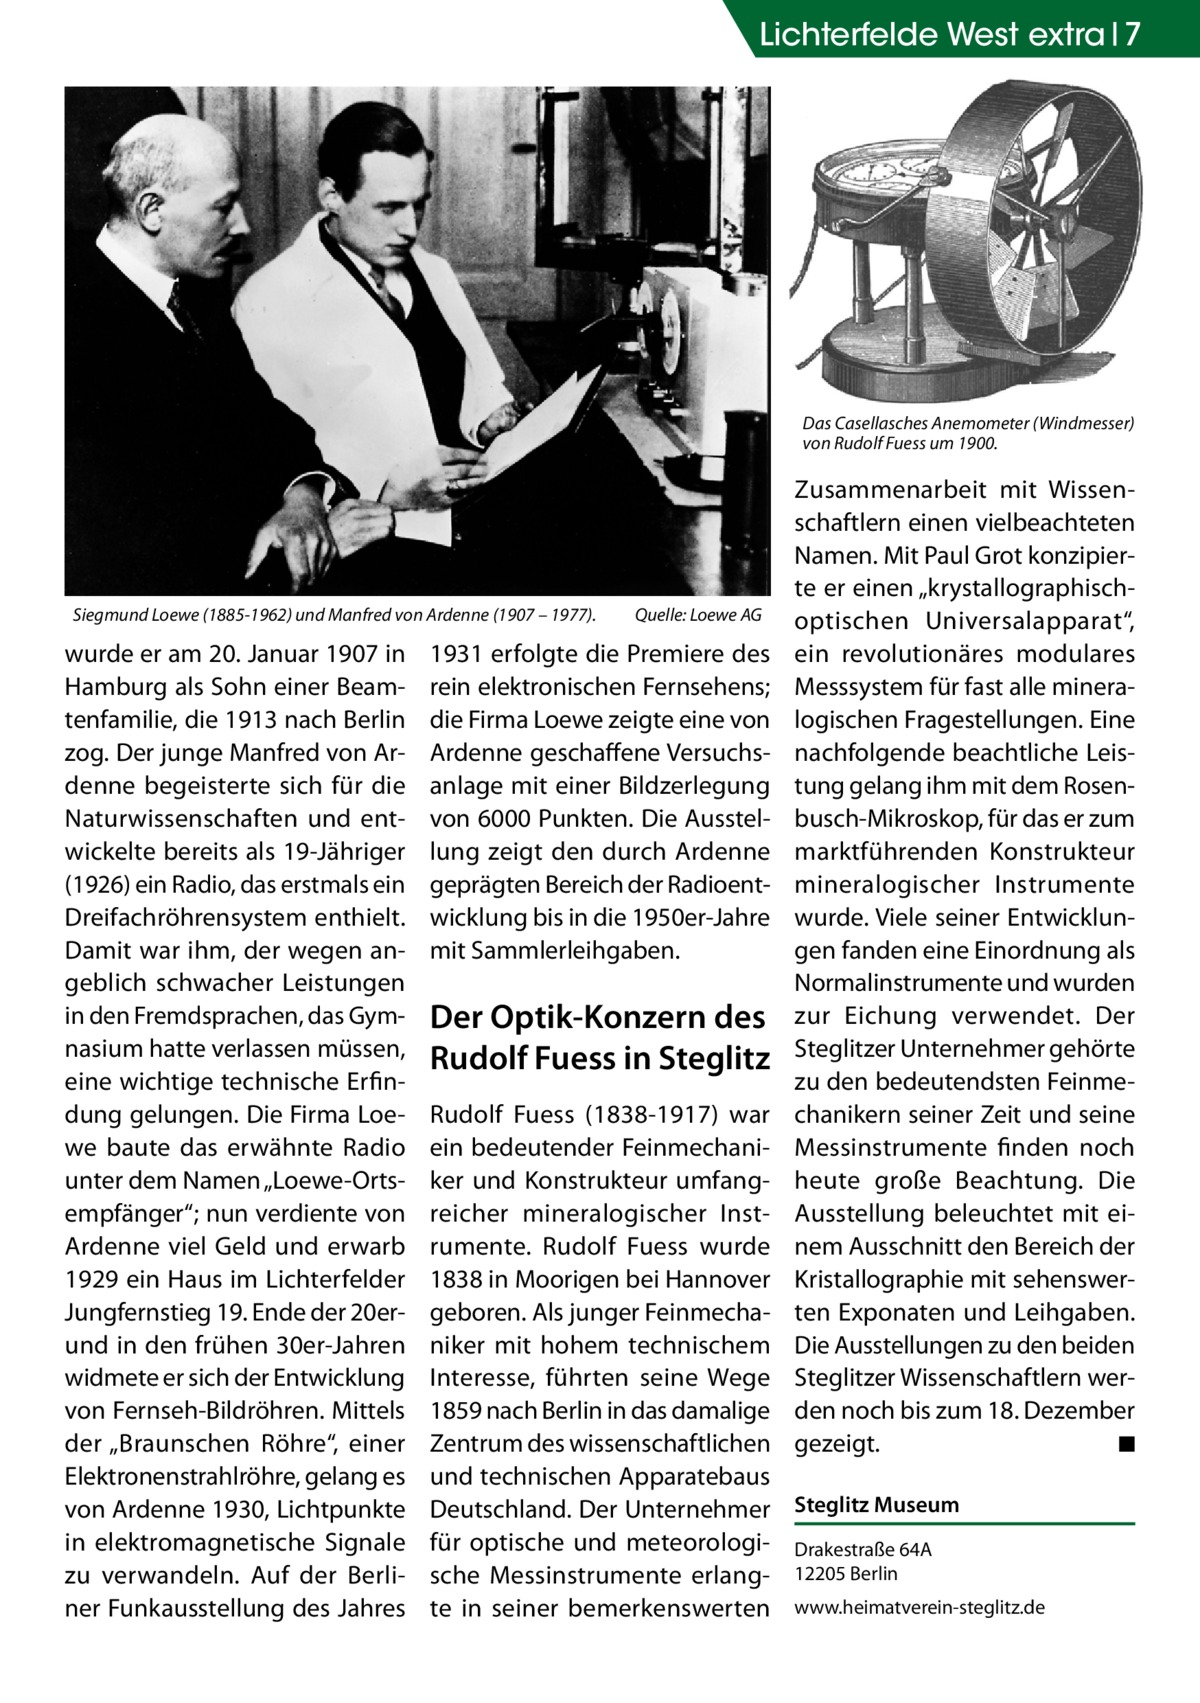 Lichterfelde West extra 7  Das Casellasches Anemometer (Windmesser) von Rudolf Fuess um 1900.  Siegmund Loewe (1885-1962) und Manfred von Ardenne (1907 – 1977).�  wurde er am 20. Januar 1907 in Hamburg als Sohn einer Beamtenfamilie, die 1913 nach Berlin zog. Der junge Manfred von Ardenne begeisterte sich für die Naturwissenschaften und entwickelte bereits als 19-Jähriger (1926) ein Radio, das erstmals ein Dreifachröhrensystem enthielt. Damit war ihm, der wegen angeblich schwacher Leistungen in den Fremdsprachen, das Gymnasium hatte verlassen müssen, eine wichtige technische Erfindung gelungen. Die Firma Loewe baute das erwähnte Radio unter dem Namen „Loewe-Ortsempfänger“; nun verdiente von Ardenne viel Geld und erwarb 1929 ein Haus im Lichterfelder Jungfernstieg 19. Ende der 20erund in den frühen 30er-Jahren widmete er sich der Entwicklung von Fernseh-Bild­röhren. Mittels der „Braunschen Röhre“, einer Elektronenstrahlröhre, gelang es von Ardenne 1930, Lichtpunkte in elektromagnetische Signale zu verwandeln. Auf der Berliner Funkausstellung des Jahres  Quelle: Loewe AG  1931 erfolgte die Premiere des rein elektronischen Fernsehens; die Firma Loewe zeigte eine von Ardenne geschaffene Versuchsanlage mit einer Bildzerlegung von 6000 Punkten. Die Ausstellung zeigt den durch Ardenne geprägten Bereich der Radioentwicklung bis in die 1950er-Jahre mit Sammlerleihgaben.  Der Optik-Konzern des Rudolf Fuess in Steglitz  Zusammenarbeit mit Wissenschaftlern einen vielbeachteten Namen. Mit Paul Grot konzipierte er einen „krystallographischoptischen Universalapparat“, ein revolutionäres modulares Messsystem für fast alle mineralogischen Fragestellungen. Eine nachfolgende beachtliche Leistung gelang ihm mit dem Rosenbusch-Mikroskop, für das er zum marktführenden Konstrukteur mineralogischer Instrumente wurde. Viele seiner Entwicklungen fanden eine Einordnung als Normalinstrumente und wurden zur Eichung verwendet. Der Steglitzer Unternehmer gehörte zu den bedeutendsten Feinmechanikern seiner Zeit und seine Messinstrumente finden noch heute große Beachtung. Die Ausstellung beleuchtet mit einem Ausschnitt den Bereich der Kristallographie mit sehenswerten Exponaten und Leihgaben. Die Ausstellungen zu den beiden Steglitzer Wissenschaftlern werden noch bis zum 18. Dezember gezeigt. � ◾  Rudolf Fuess (1838-1917) war ein bedeutender Feinmechaniker und Konstrukteur umfangreicher mineralogischer Instrumente. Rudolf Fuess wurde 1838 in Moorigen bei Hannover geboren. Als junger Feinmechaniker mit hohem technischem Interesse, führten seine Wege 1859 nach Berlin in das damalige Zentrum des wissenschaftlichen und technischen Apparatebaus Deutschland. Der Unternehmer Steglitz Museum für optische und meteorologi- Drakestraße 64A sche Messinstrumente erlang- 12205 Berlin te in seiner bemerkenswerten www.heimatverein-steglitz.de